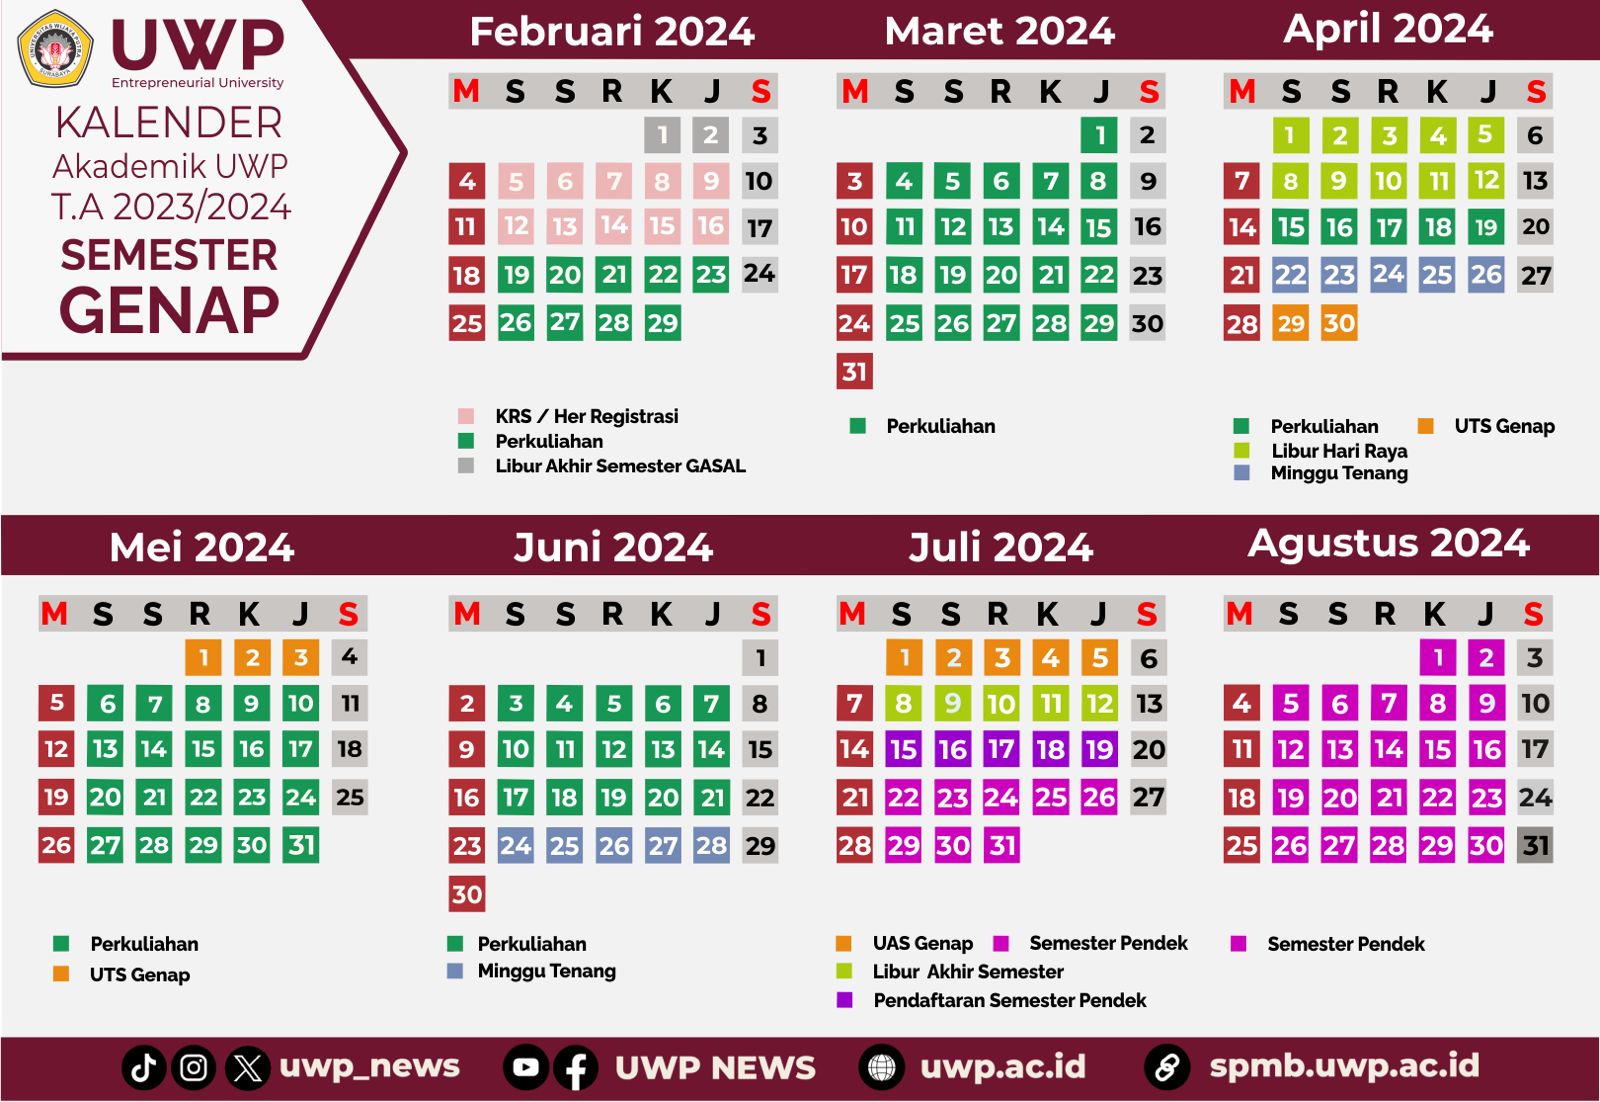 Academic Calendar 2021-2022 (Even Semester)